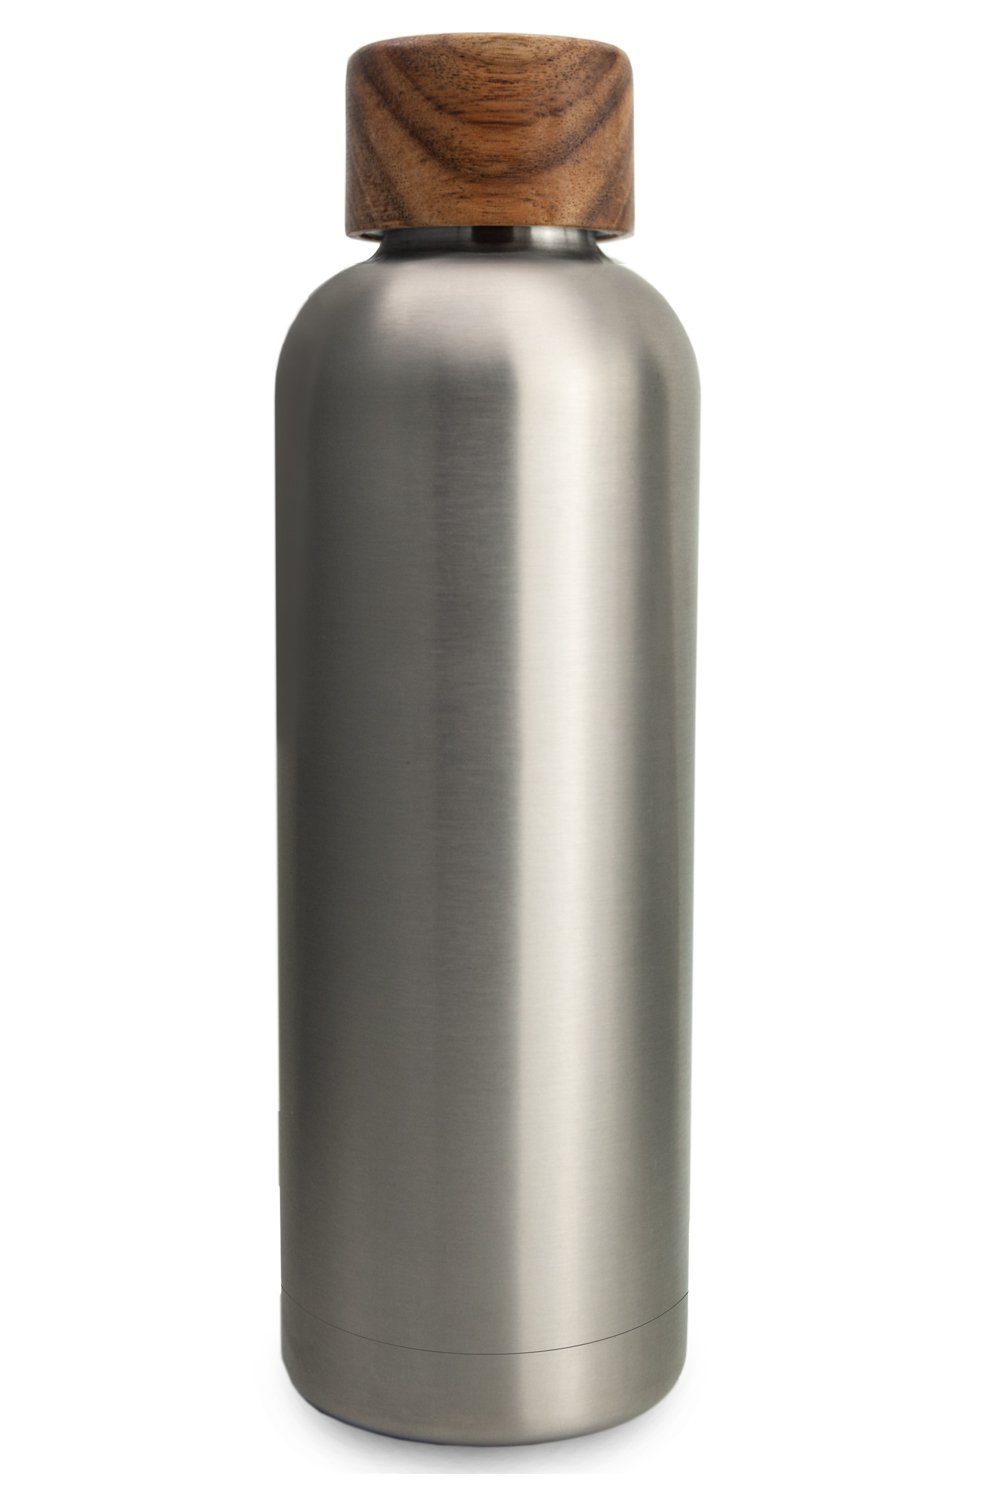 TRENDY AND NEW Trinkflasche T&N Edelstahl Trinkflasche 500ml - Wood Edition, Thermosflasche 500 ml für Büro, auslaufsichere, robuste, isolierte Wasserflasche 0,5l für Kohlensäure, Thermoskanne 500ml für unterwegs, Isolierflasche für Tee & Kaffee, hält 14h HEISS 29h EISKALT, Flasche für Sprudel-Wasser Stainless Steel